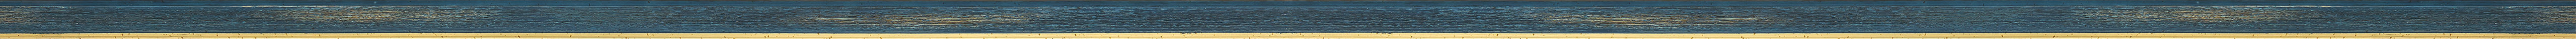 Μοντέρνα χειροποίητη μπλε κορνίζα frame